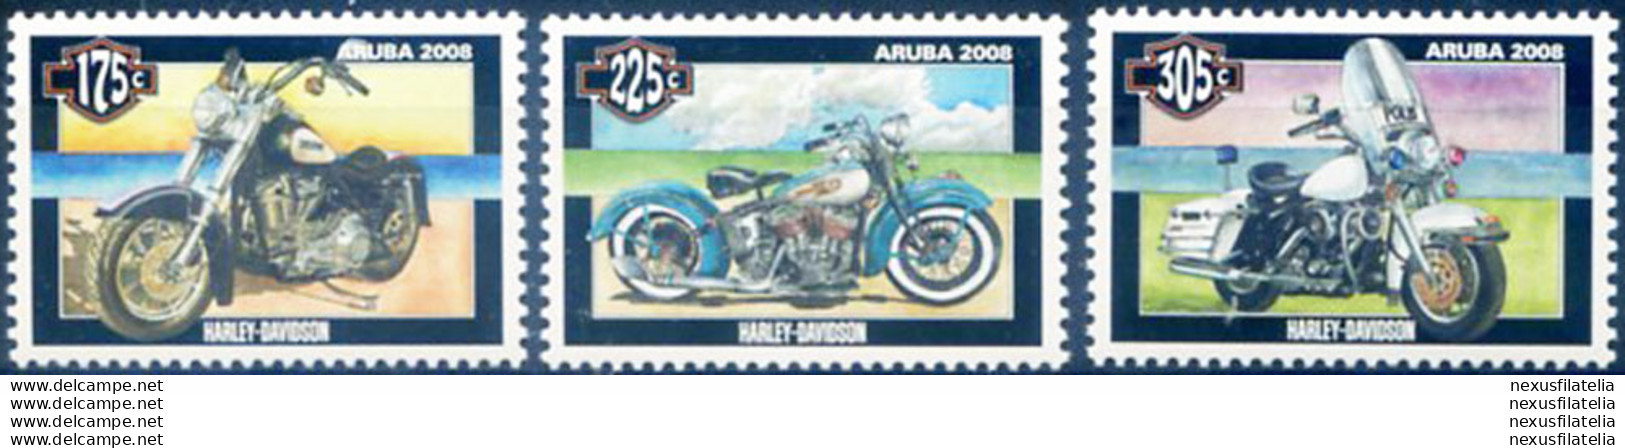 Motociclette 2008. - Curazao, Antillas Holandesas, Aruba